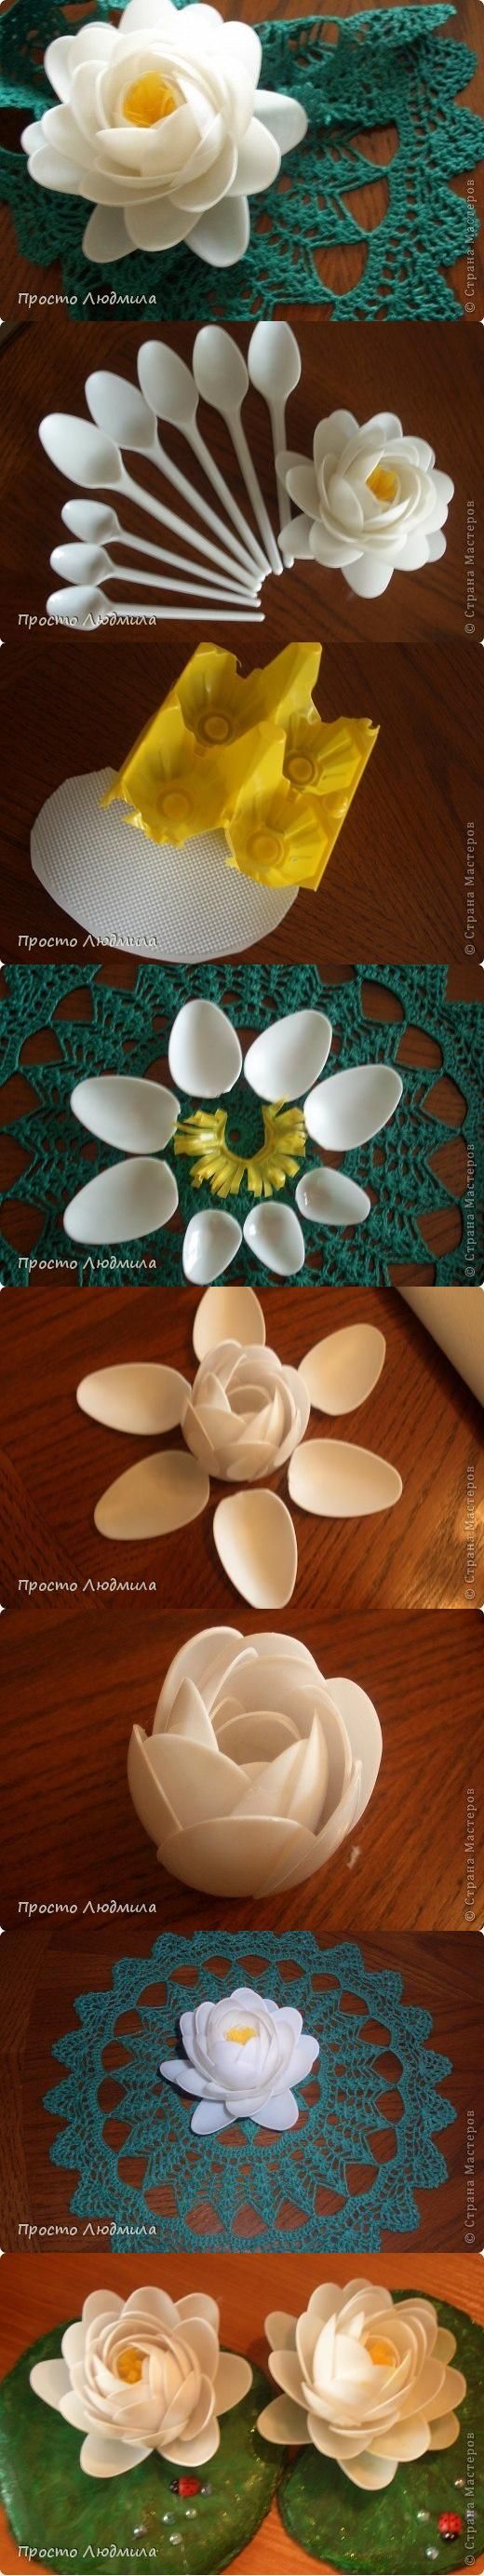 Riciclo creativo: 10 modi per realizzare i fiori con materiali di recupero